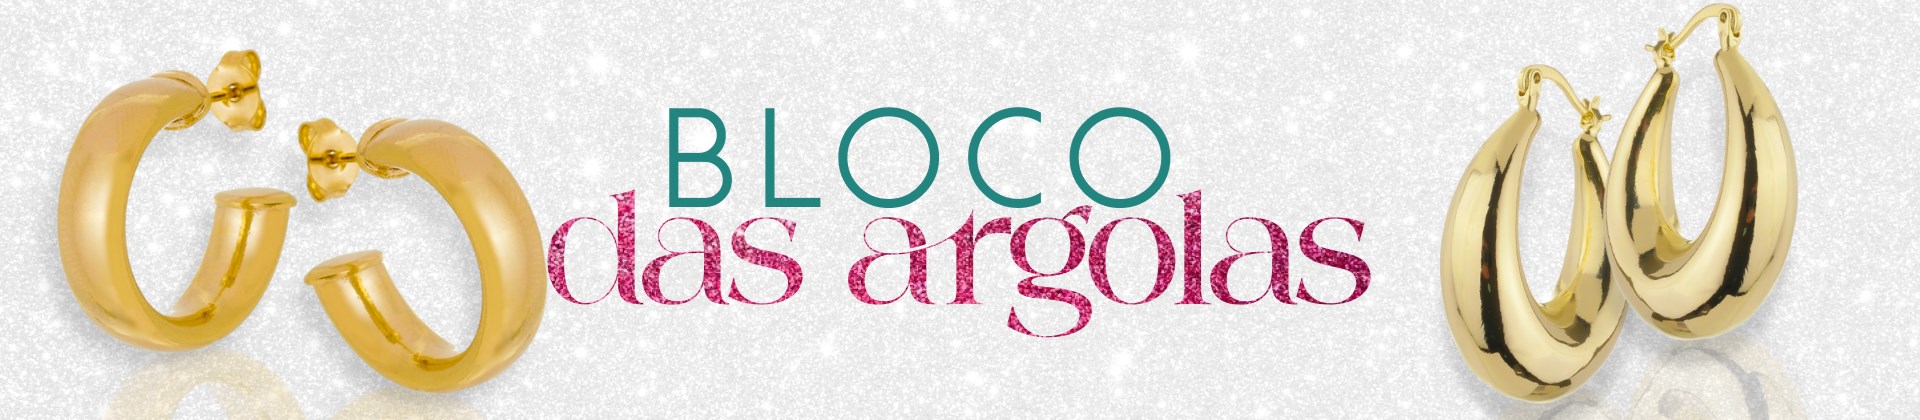 BLOCO DAS ARGOLAS | Carna Gold